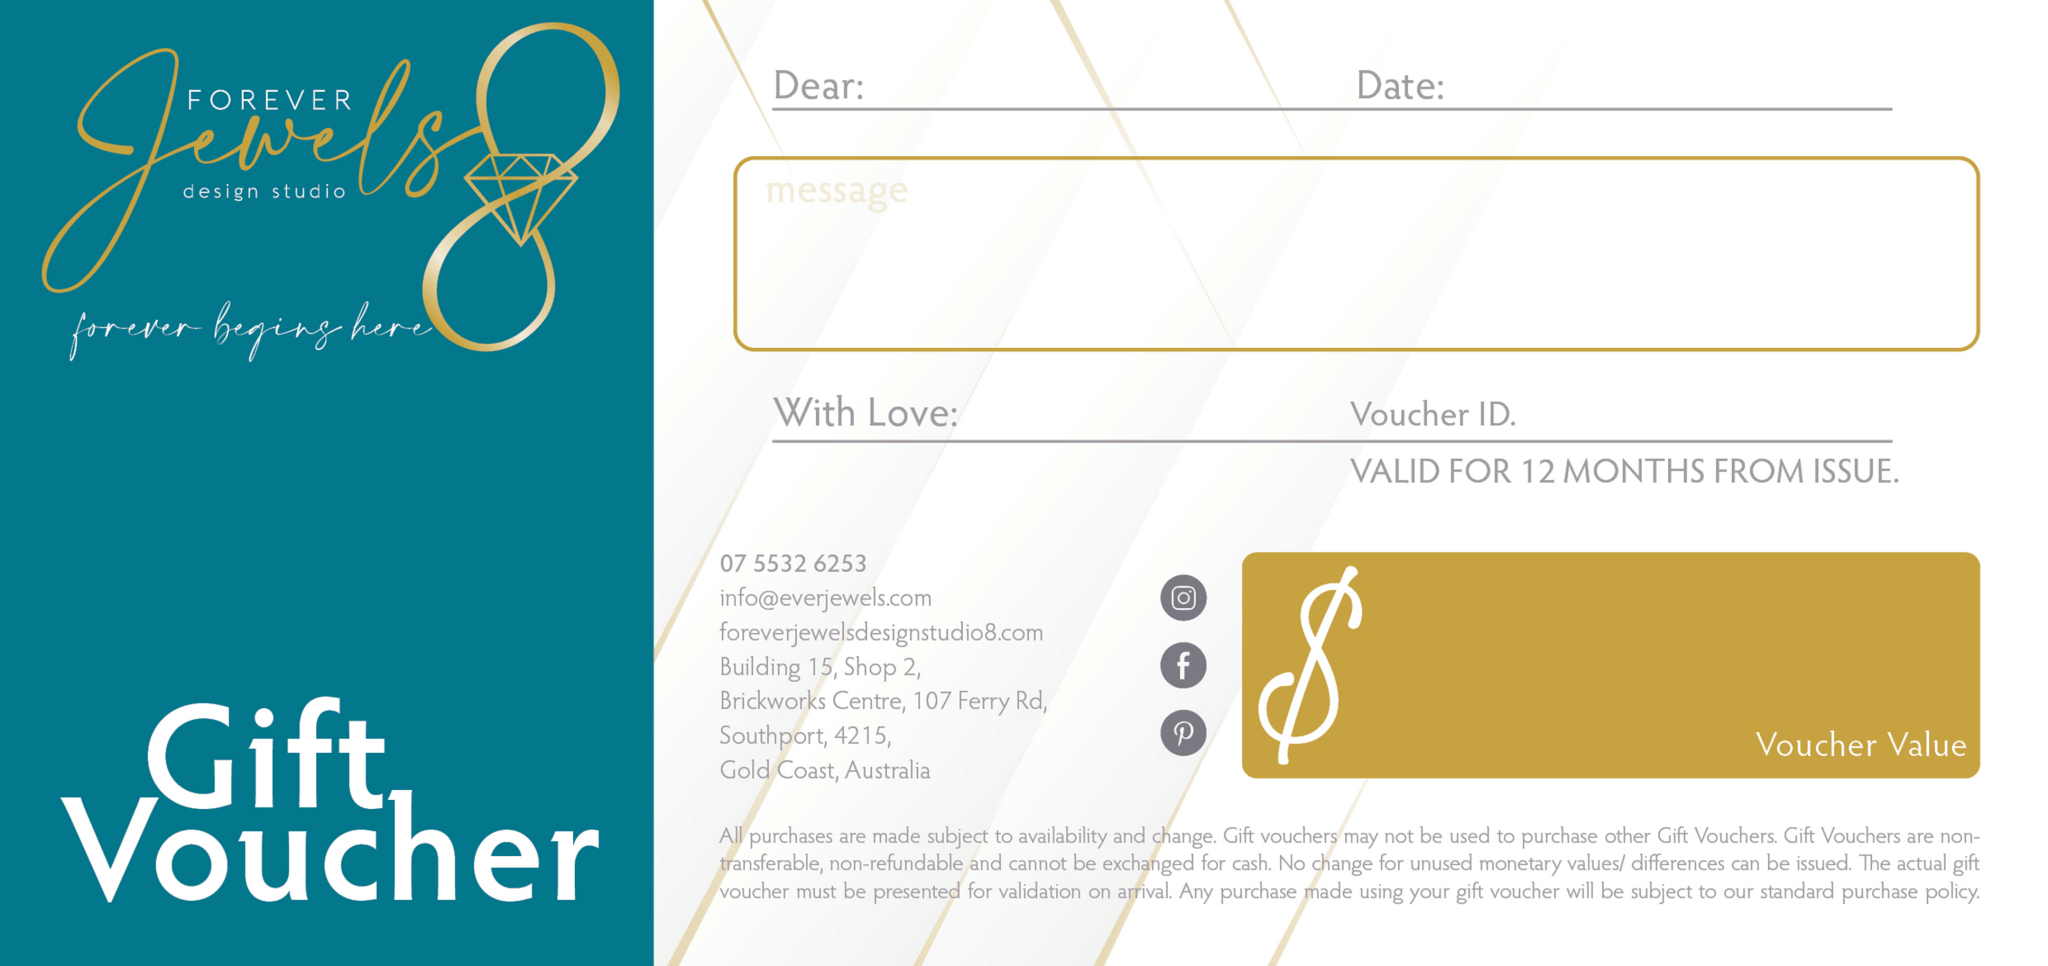 Gift Cards - ForeverJewels Design Studio 8